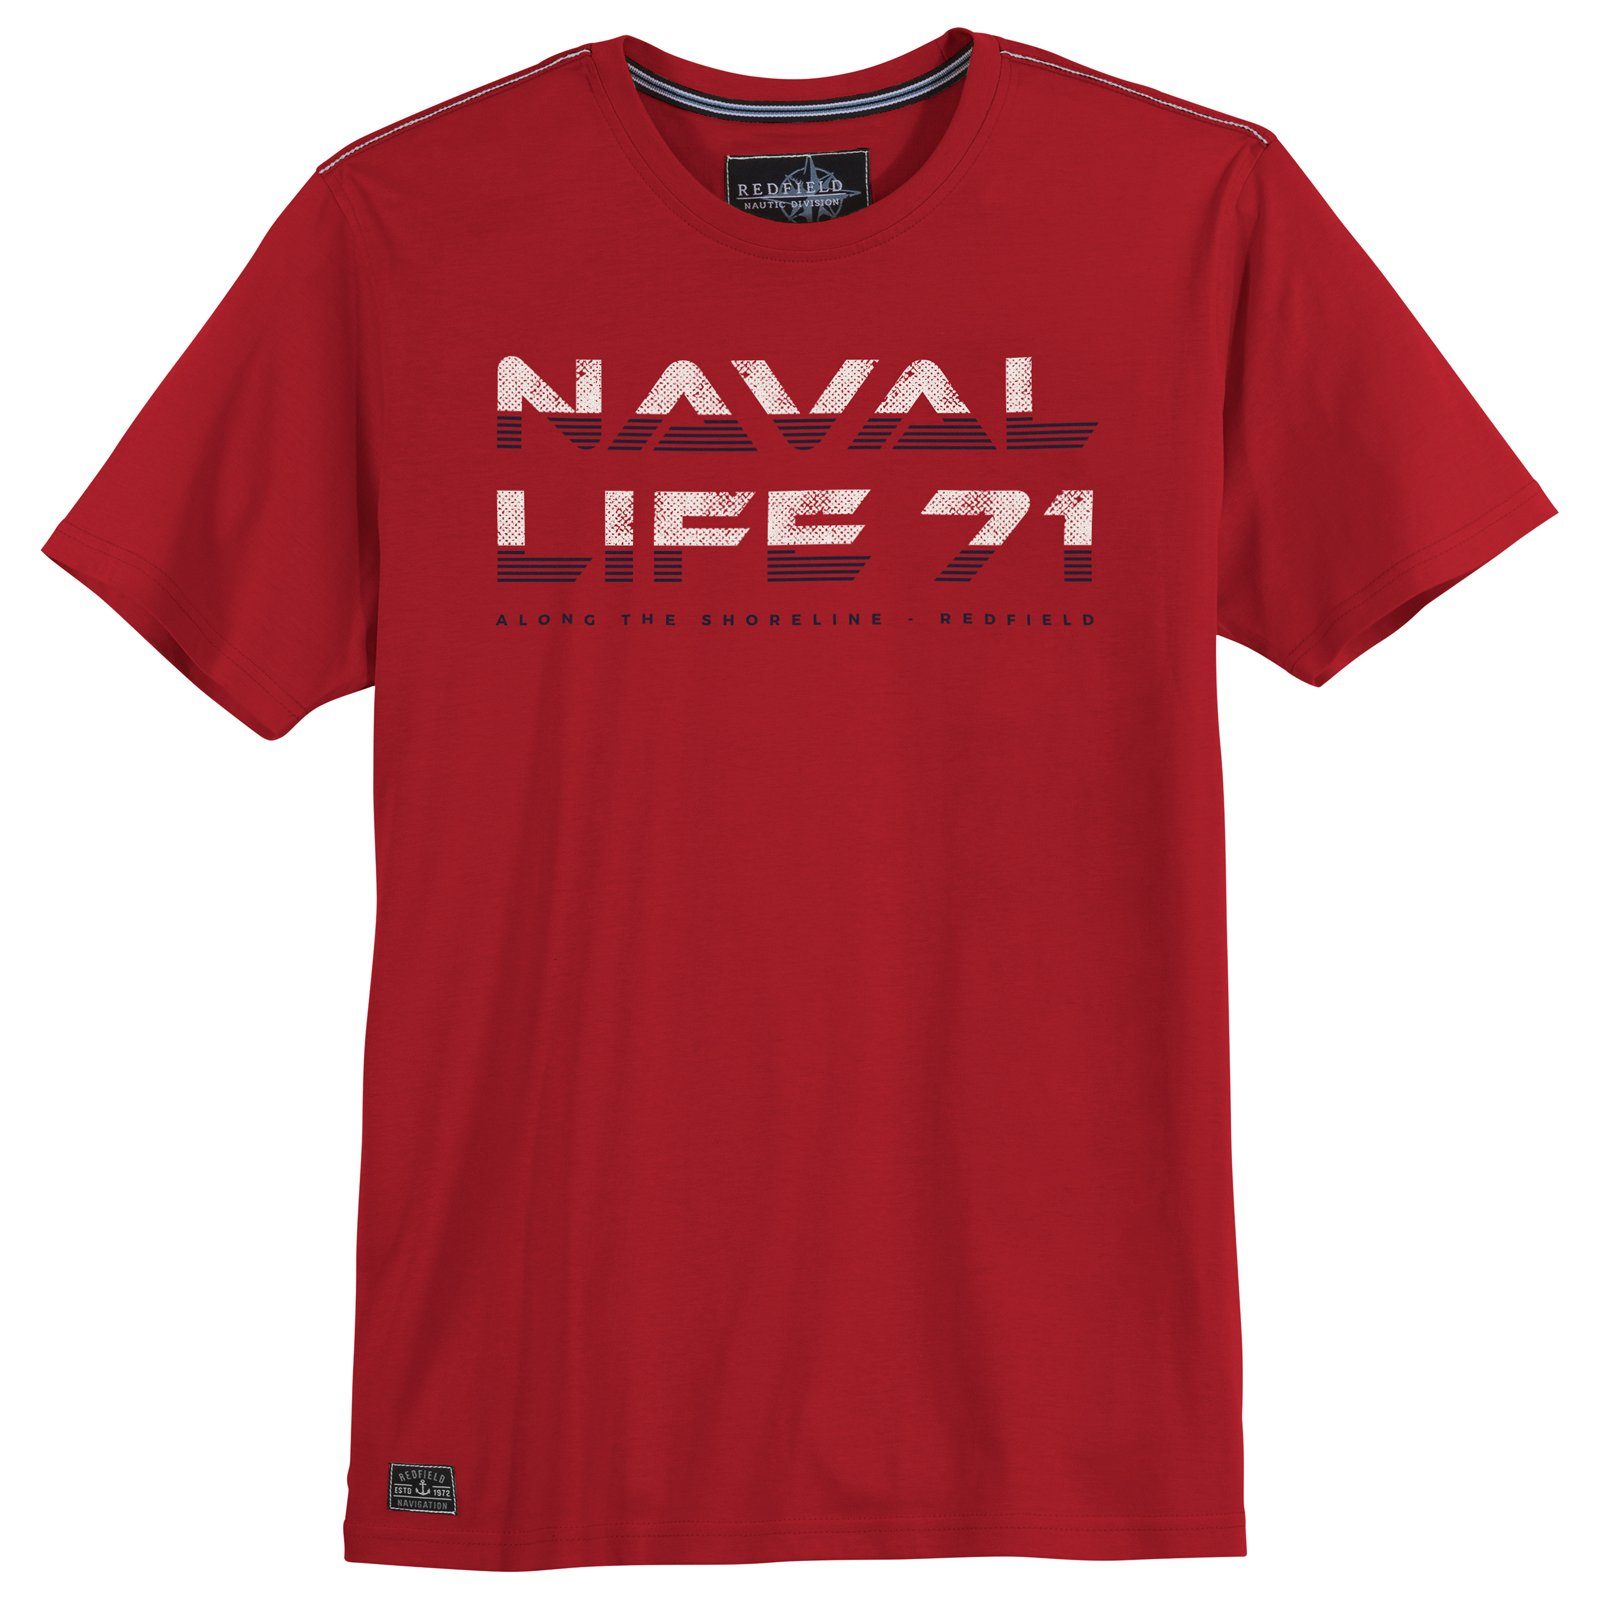 redfield Rundhalsshirt Herren Redfield 71 rot Life Große Größen T-Shirt Naval